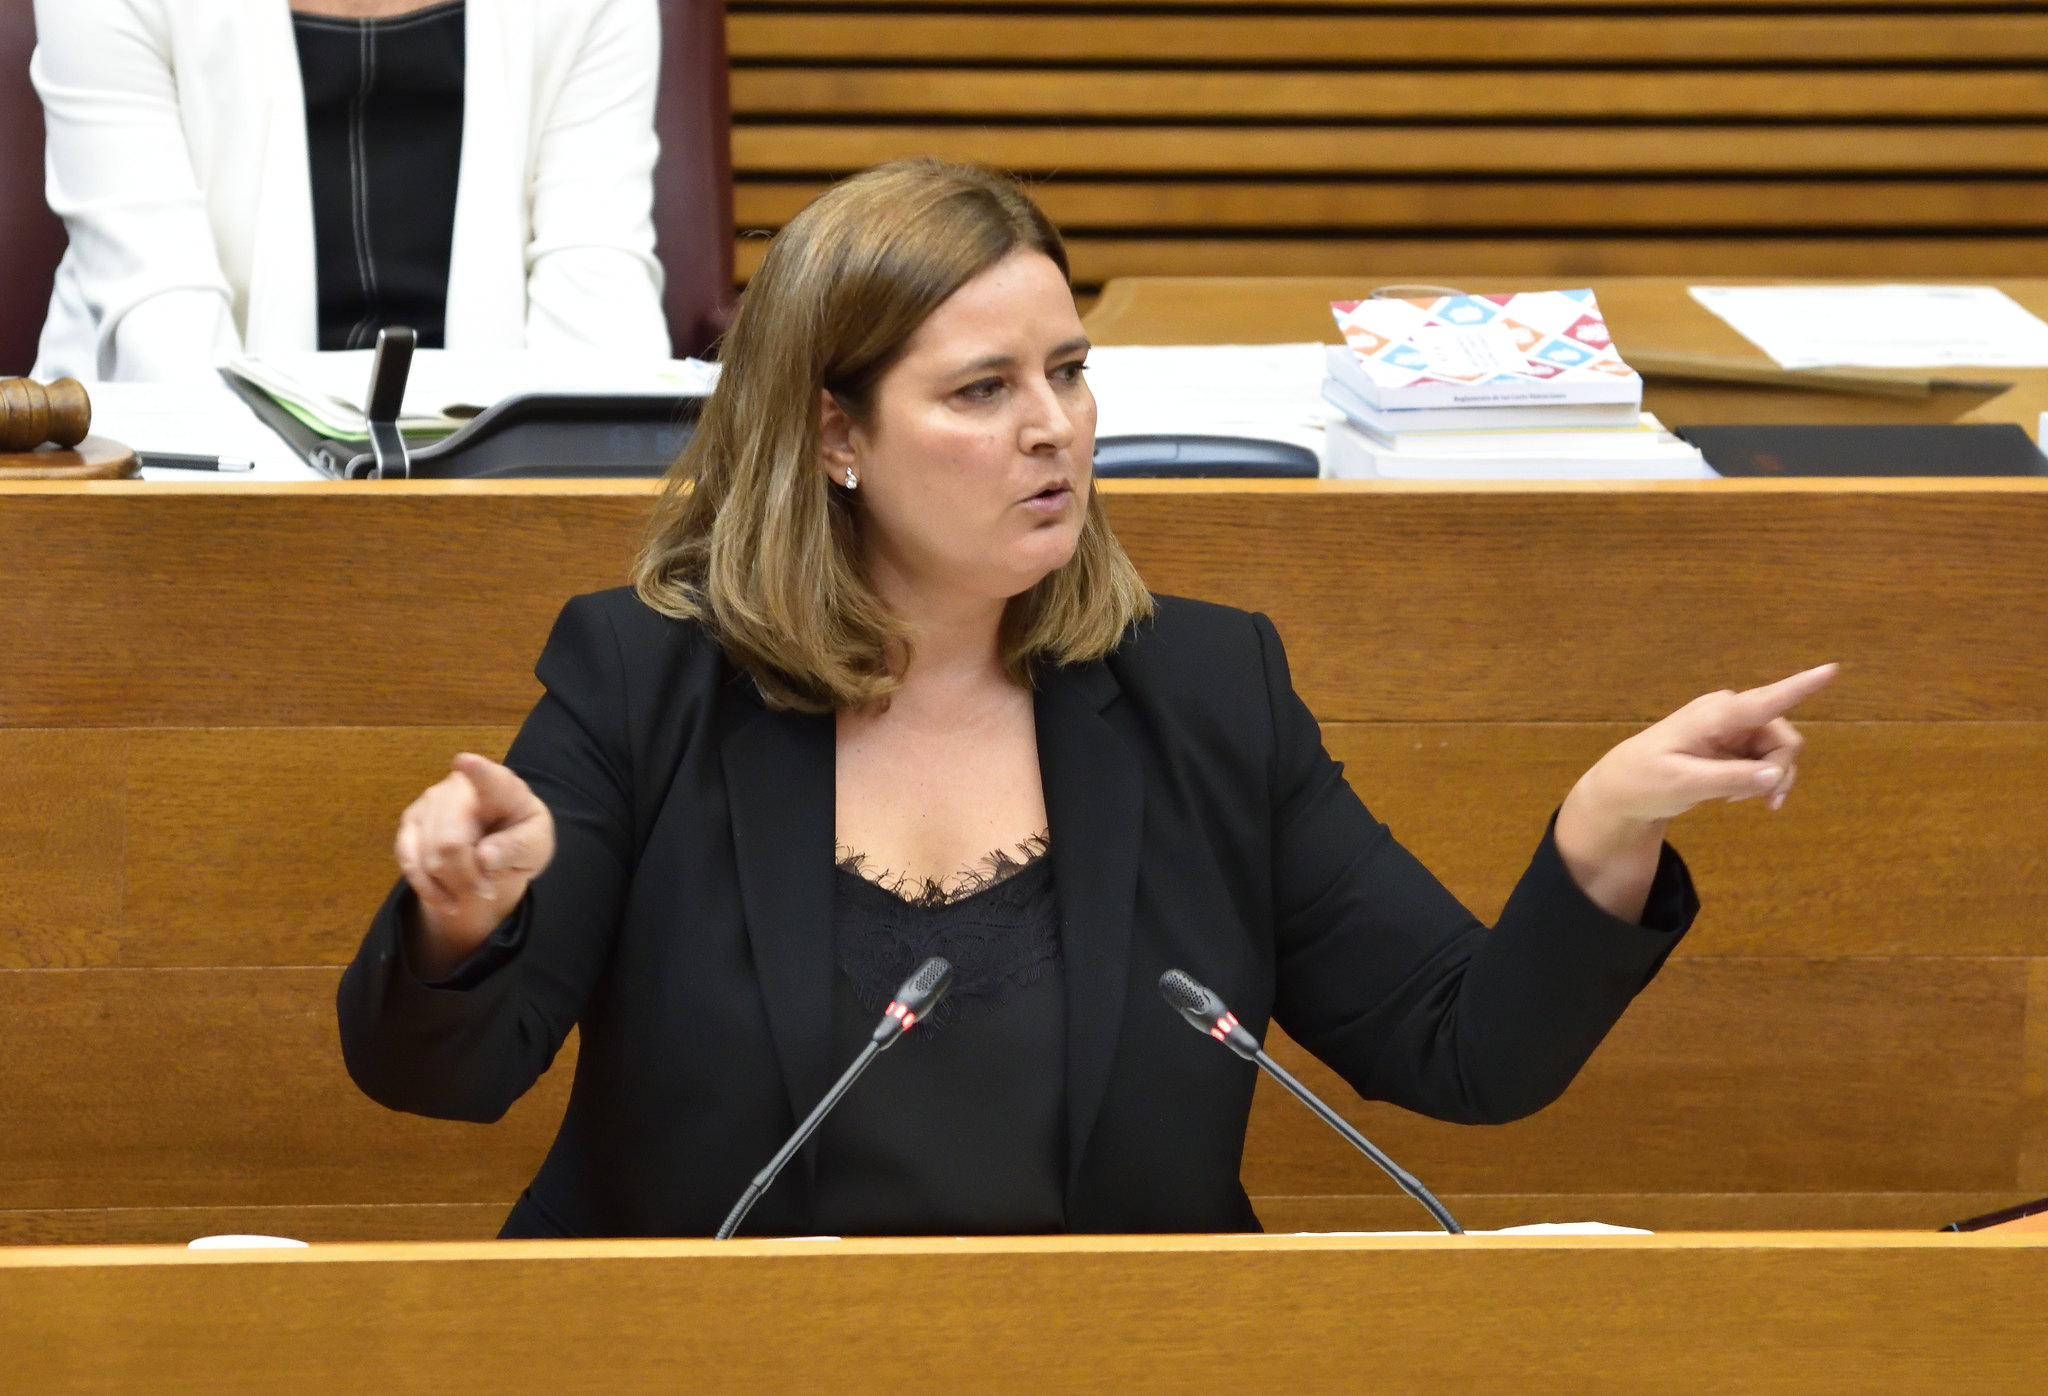 La portavoz de Igualdad, Marisa Mezquita, critica que Oltra pretenda aprobar la Estrategia valenciana contra la violencia sexual sin consenso